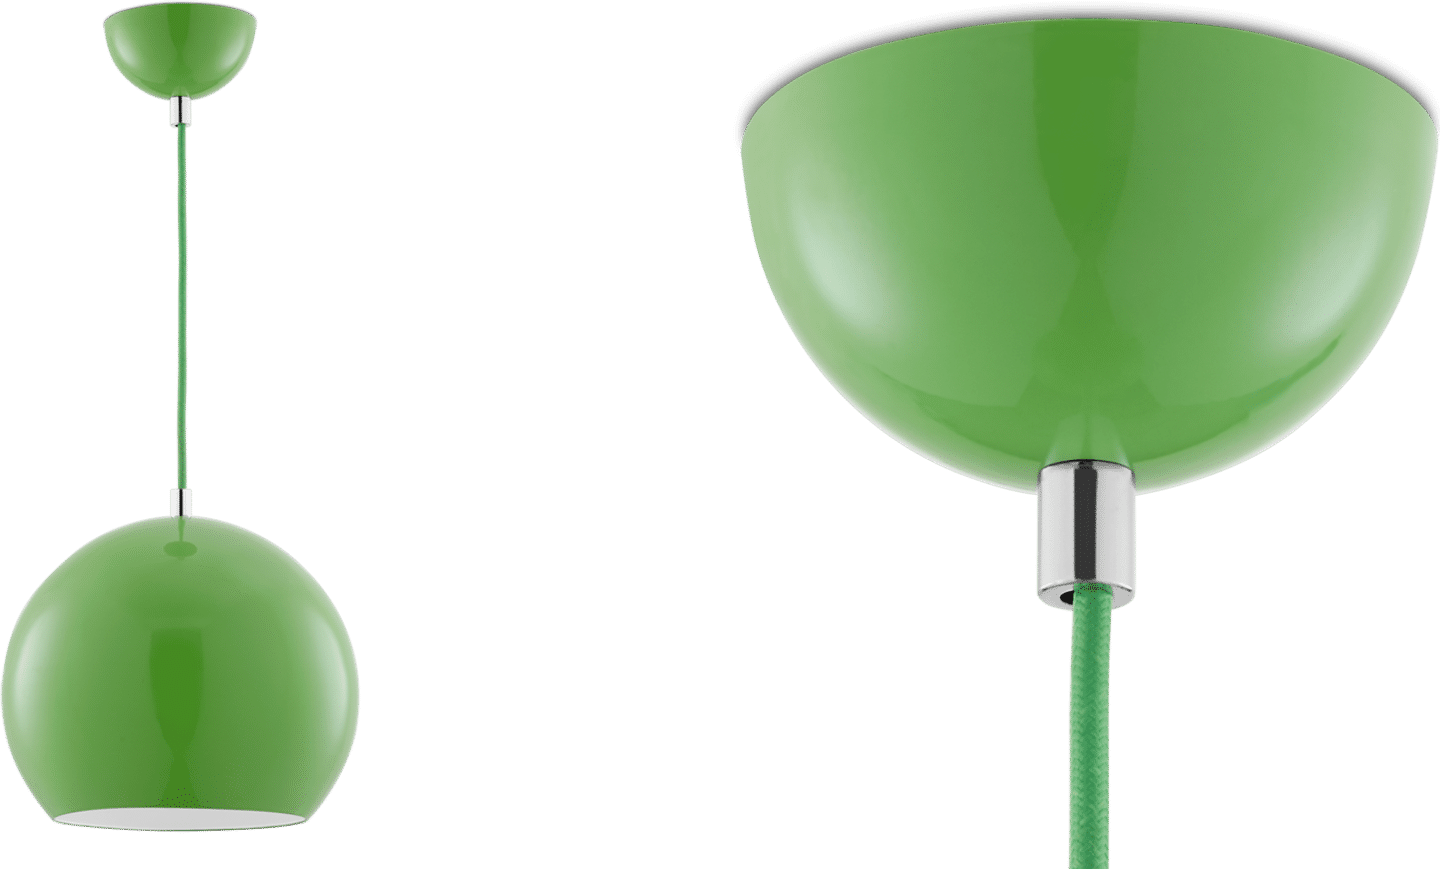 Topan VP6 Pendant Lamp Green image.